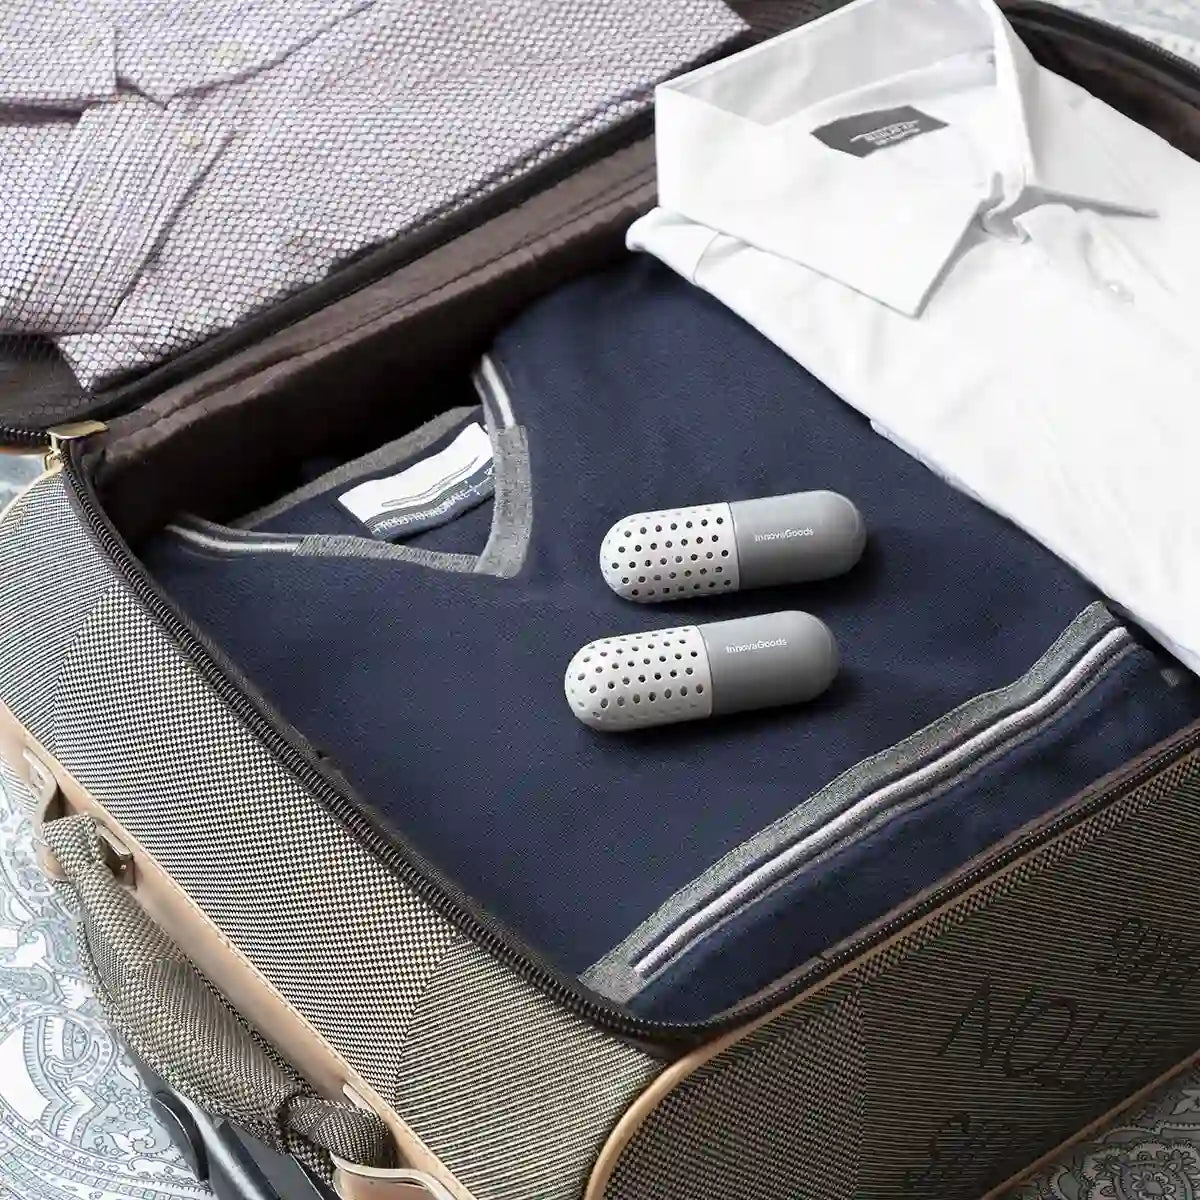 Duftkapsler i en koffert